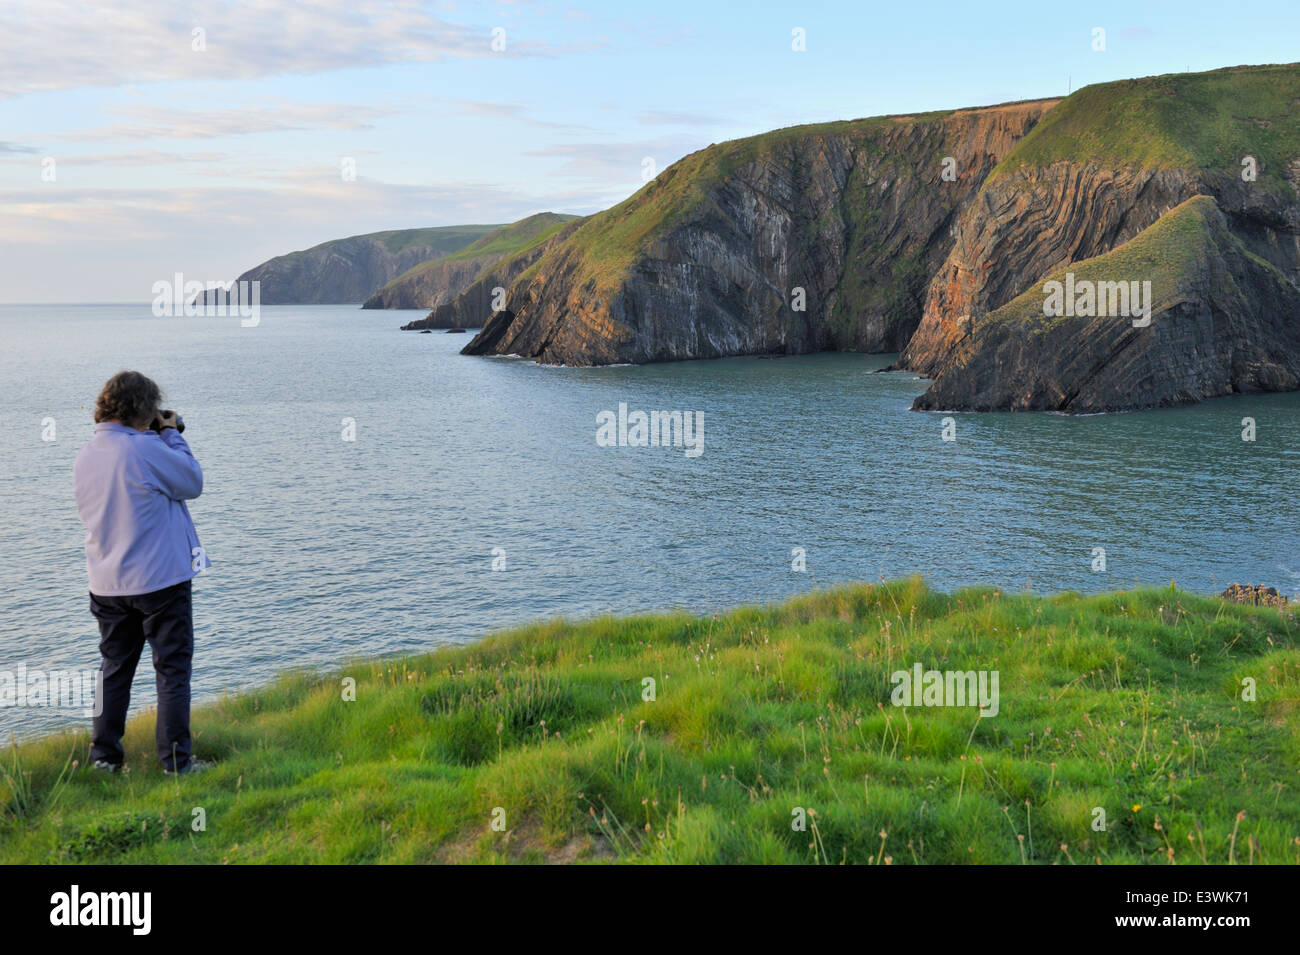 Début de soirée femme avec caméra sur champ vert le long de la côte du Pembrokeshire, Pays de Galles de l'ouest. Près de la Baie d'Ceibwr Banque D'Images